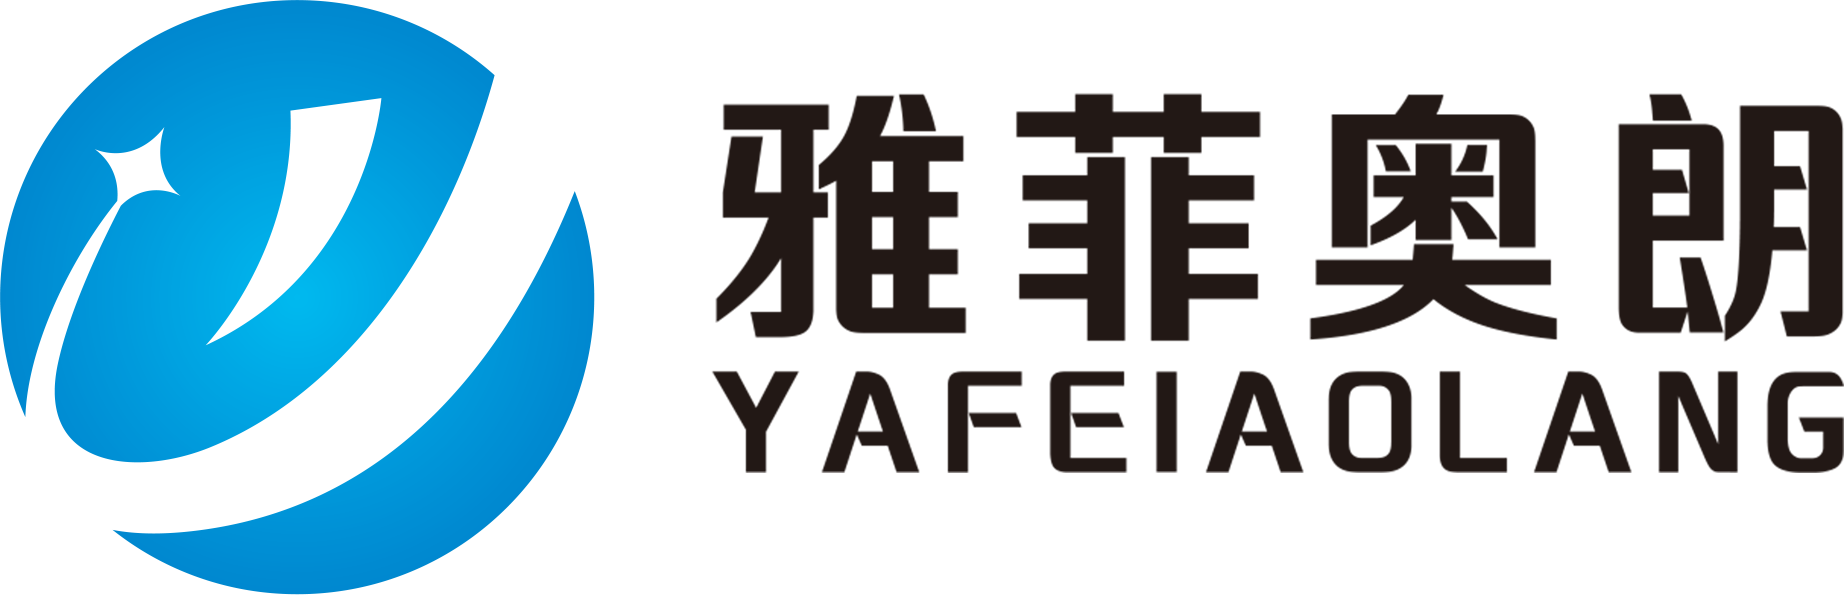 ya-fei-ao-lang-logo